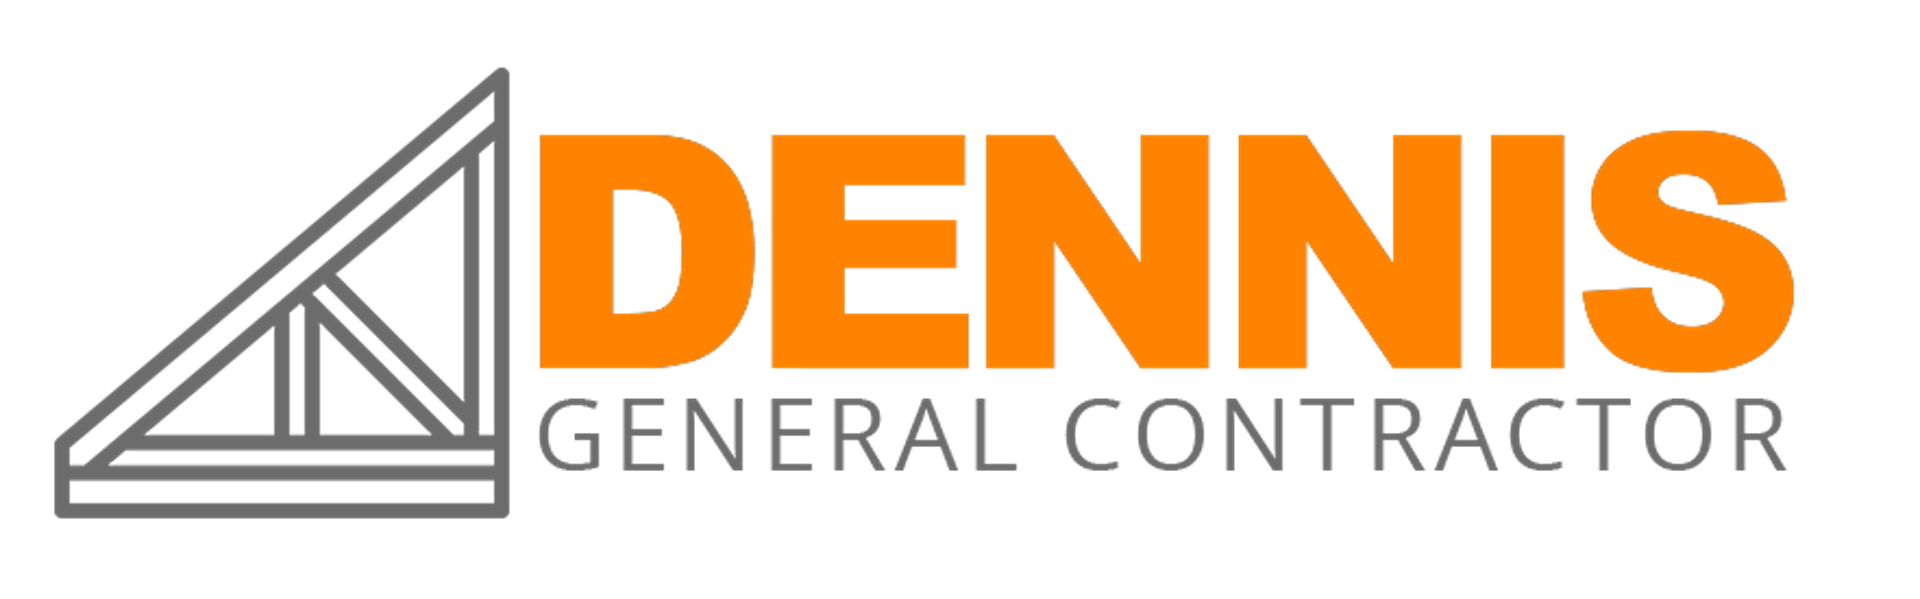 Dennis General Contractor Logo